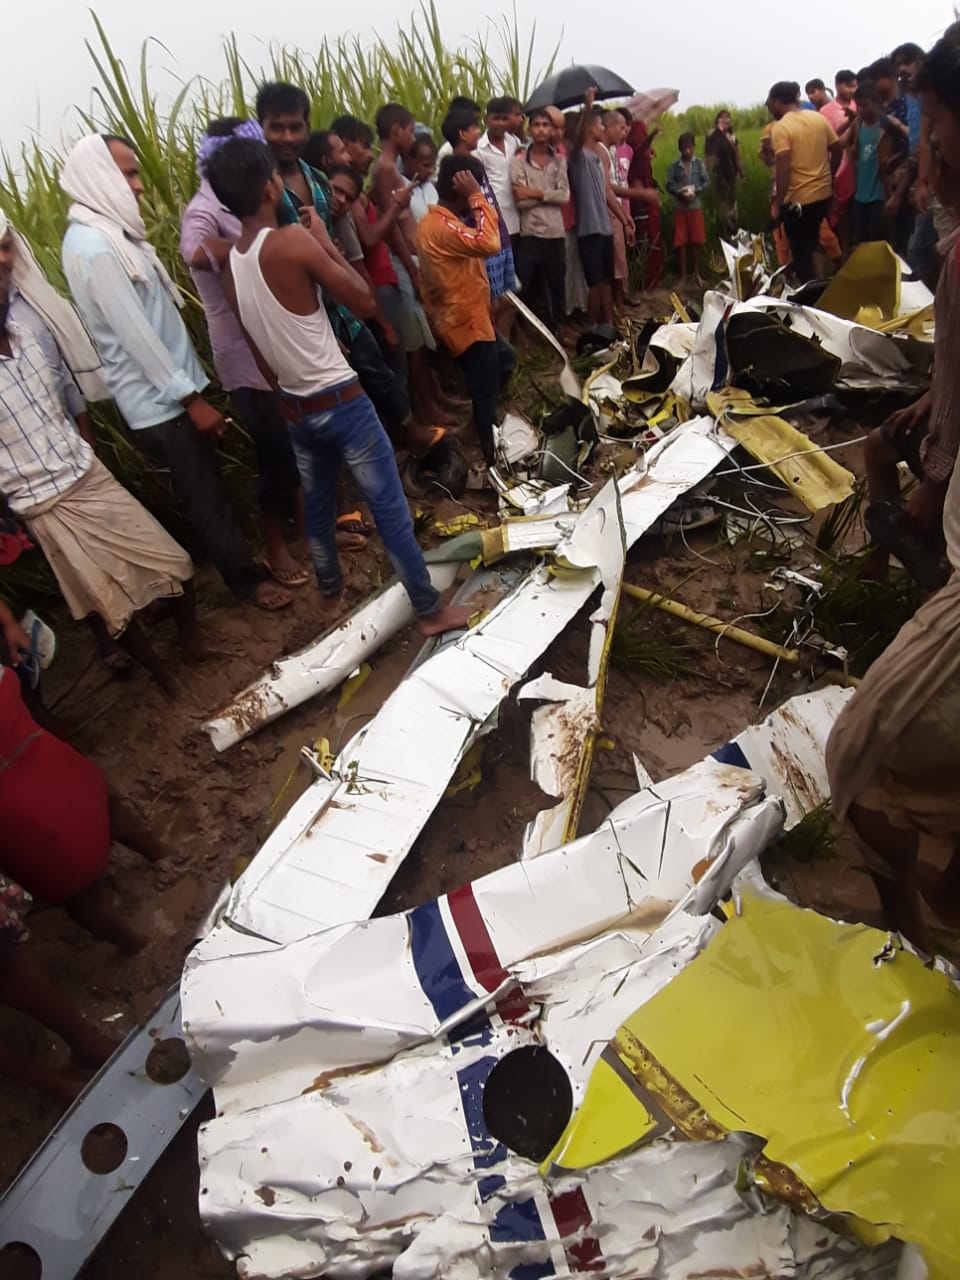 खराब मौसम के कारण क्रैश हुआ एयरक्राफ्ट, पायलट की मौत | #TEJASTODAY आजमगढ़। सरायमीर स्थित कुशहा फरीदुनपुर में सोमवार की सुबह एक एयरक्राफ्ट गिरने के बाद क्षेत्र में अफरातफरी मच गई। आनन फानन सूचना मिलने के बाद मौके पर पुलिस कर्मी पहुंचे और दुर्घटनास्‍थल का जायजा लिया। स्‍थानीय लोगों के अनुसार सोमवार की सुबह से ही आसमान में बादल था और खराब मौसम के बीच आसमान में एयरक्राफ्ट अनियंत्रित होता नजर आया। देखते ही देखते यह खेतों की ओर अचानक तेजी से आने लगा तो ग्रामीण लोग भी आनन-फानन मौके पर पहुंचे गए और राहत बचाव कार्य में जुट गए। पुलिस के अनुसार हादसे में एक पायलट की मौत हो गई है। प्रशासन की ओर से बताया गया है कि एयरक्राफ्ट एयरपोर्ट फुर्सतगंज से अपने नियमित प्रशिक्षण उड़ान के लिए निकला था। एयरक्राफ्ट पर एक पायलट सवार था। मौसम खराब होने के बाद अनियंत्रित होकर गिर कर मलबे में तब्दील हो गया। इस बाबत जिला प्रशासन की ओर से संबंधित प्रशिक्षण केंद्र को सूचना दे दी गई है। हादसे को लेकर डीआइजी सुभाष दुबे ने बताया कि आजमगढ़ में दुर्घटनाग्रस्‍त विमान हादसे में शामिल प्रशिक्षण विमान फुर्सतगंज रायबरेली से उड़ा था जिसे मऊ तक चक्‍कर लगाना था। एयरपोर्ट से उड़े विमान क्रमांक बीटीआइजीई को 24 वर्षीय पायलट सोनार्क शरण उड़ा रहे थे जिनकी हादसे में मौत हो गई है। माना जा रहा है कि हादसा खराब मौसम होने की वजह से विमान अनियंत्रित होने से हुआ है, इस बाबत संबंधित केंद्र को सूचना दे दी गई है। मौके पर पुलिस टीम और प्रशासन राहत और बचाव कार्य में जुट गए हैं। स्‍थानीय लोगों के अनुसार एयरक्राफ्ट जमीन में इतनी तेजी से गिरा कि किसी को भी बचने का मौका नहीं मिला और जमीन से टकराने के बाद टुकड़े-टुकड़े हो गया। दुर्घटना होने के बाद मौके से एक पायलट का भी शव बरामद किया गया है। वहीं हादसे की जानकारी पुलिस को हुई तो मौके पर पहुंचे पुलिस कर्मियों ने शव को वहां से ग्रामीणों के सहयोग से हटाया। मौसम खराब होने के कारण सोमवार काे दिन में 11 बजे एयरक्राफ्ट खेत में गिरने से हड़कंप मच गया। प्रत्यक्षदर्शियों के मुताबिक आसमान में संतुलन खाेने के कारण एक युवक को विमान से छलांग लगाते देखा गया। हेलिकॉप्टर के मलबे से करीब दो किमी. दूर एक व्यक्ति का शव बरामद हुआ जिसकी पहचान पायलट सोनार्क शरण (24) के रुप में हुई है। घटना सरायमीर कस्बा से सात किमी. दूर फरीद्​दीनपुर कोलपुर कुशहा गांव के निकट हुई है। ग्रामीणों ने बताया कि उस समय भीषण बारिश हो रही ही थी। आसमान में तेज आवाज हुई तो लोग ऊपर देखे तो नजारा ने उन्हें कंपा दिया। हवा में विमान बुरी तरह से अनियंत्रित था। ग्रामीण अनहोनी की आशंका को लेकर परेशान थे ही कि एक युवक विमान से छलांग लगाते दिख गया। दूसरे ही पल प्रशिक्षण विमान गिरते दिखा तो लोग सुरक्षित स्थान पर जा छिपे। बमुश्किल पांच मिनट के अंतराल में विमान खेत में गिरकर मलबे में बदल गया। वहीं विमान से कूदे व्यक्ति की पहचान पायलट के रुप में हुई है। मौके पर पहुंचे एसडीएम वागीश शुक्ल ने बताया कि ग्राम प्रधान की ओर से हेलिकॉप्टर गिरने और एक व्यक्ति के मरने की सूचना दी गई। प्रशासनिक टीम मौके पर पहुंच कर राहत और बचाव कार्य में लगी हुई थी। ब्रेकिंग खबरों से अपडेट रहने के लिए आज ही प्ले स्टोर या इस लिंक पर क्लिक कर tejastoday.com Apps इंस्टॉल करें https://play.google.com/store/apps/details?id=com.tejastoday.news लाइक करके जुड़ जाइए इस पेज से और पढ़िए ब्रेकिग खबरें....